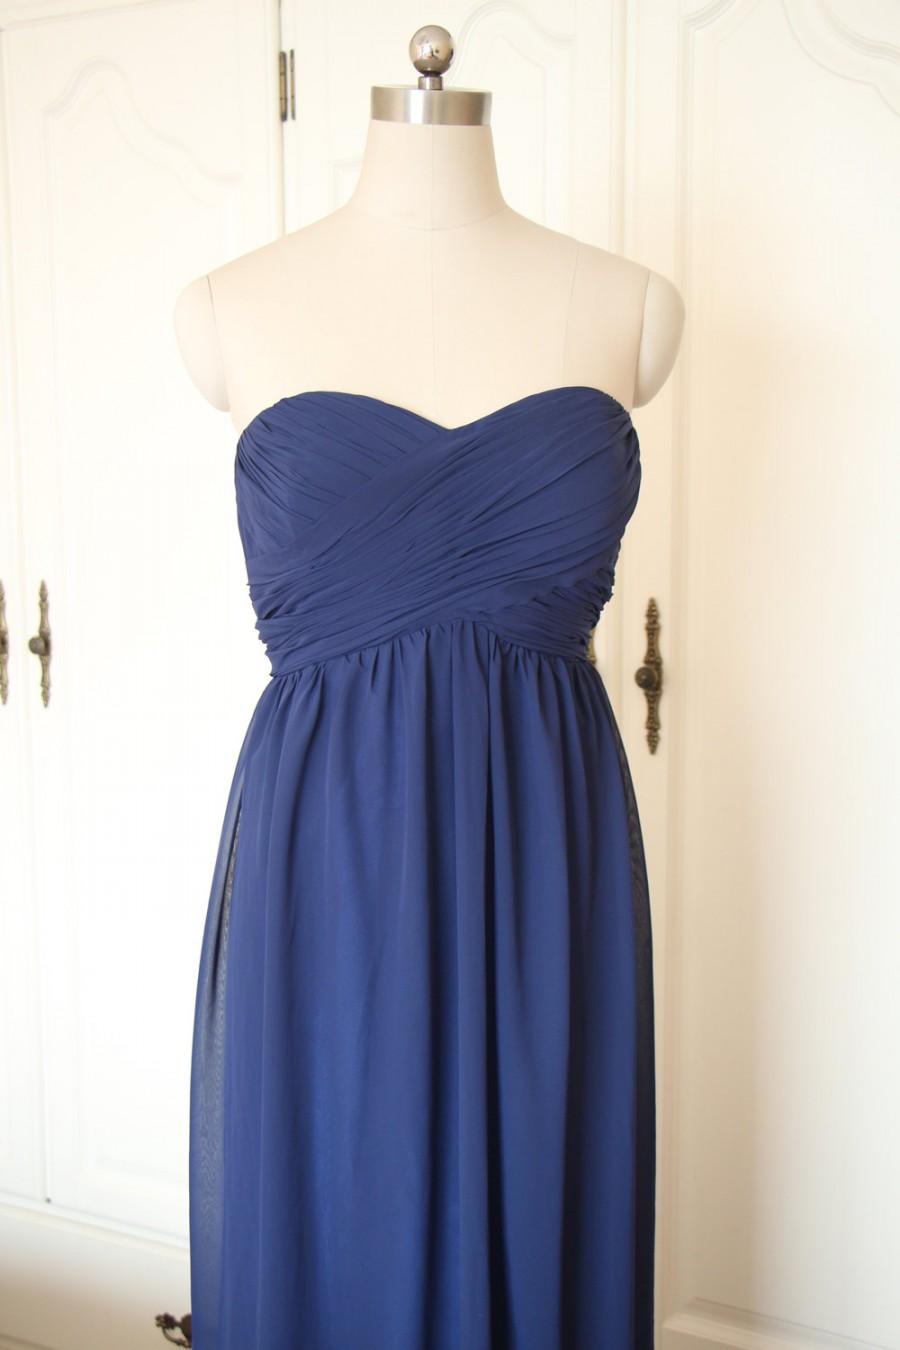 Hochzeit - Navy Blue Sweetheart Short/Floor-length Bridesmaid Dress Navy Chiffon Strapless Dress-Custom Dress